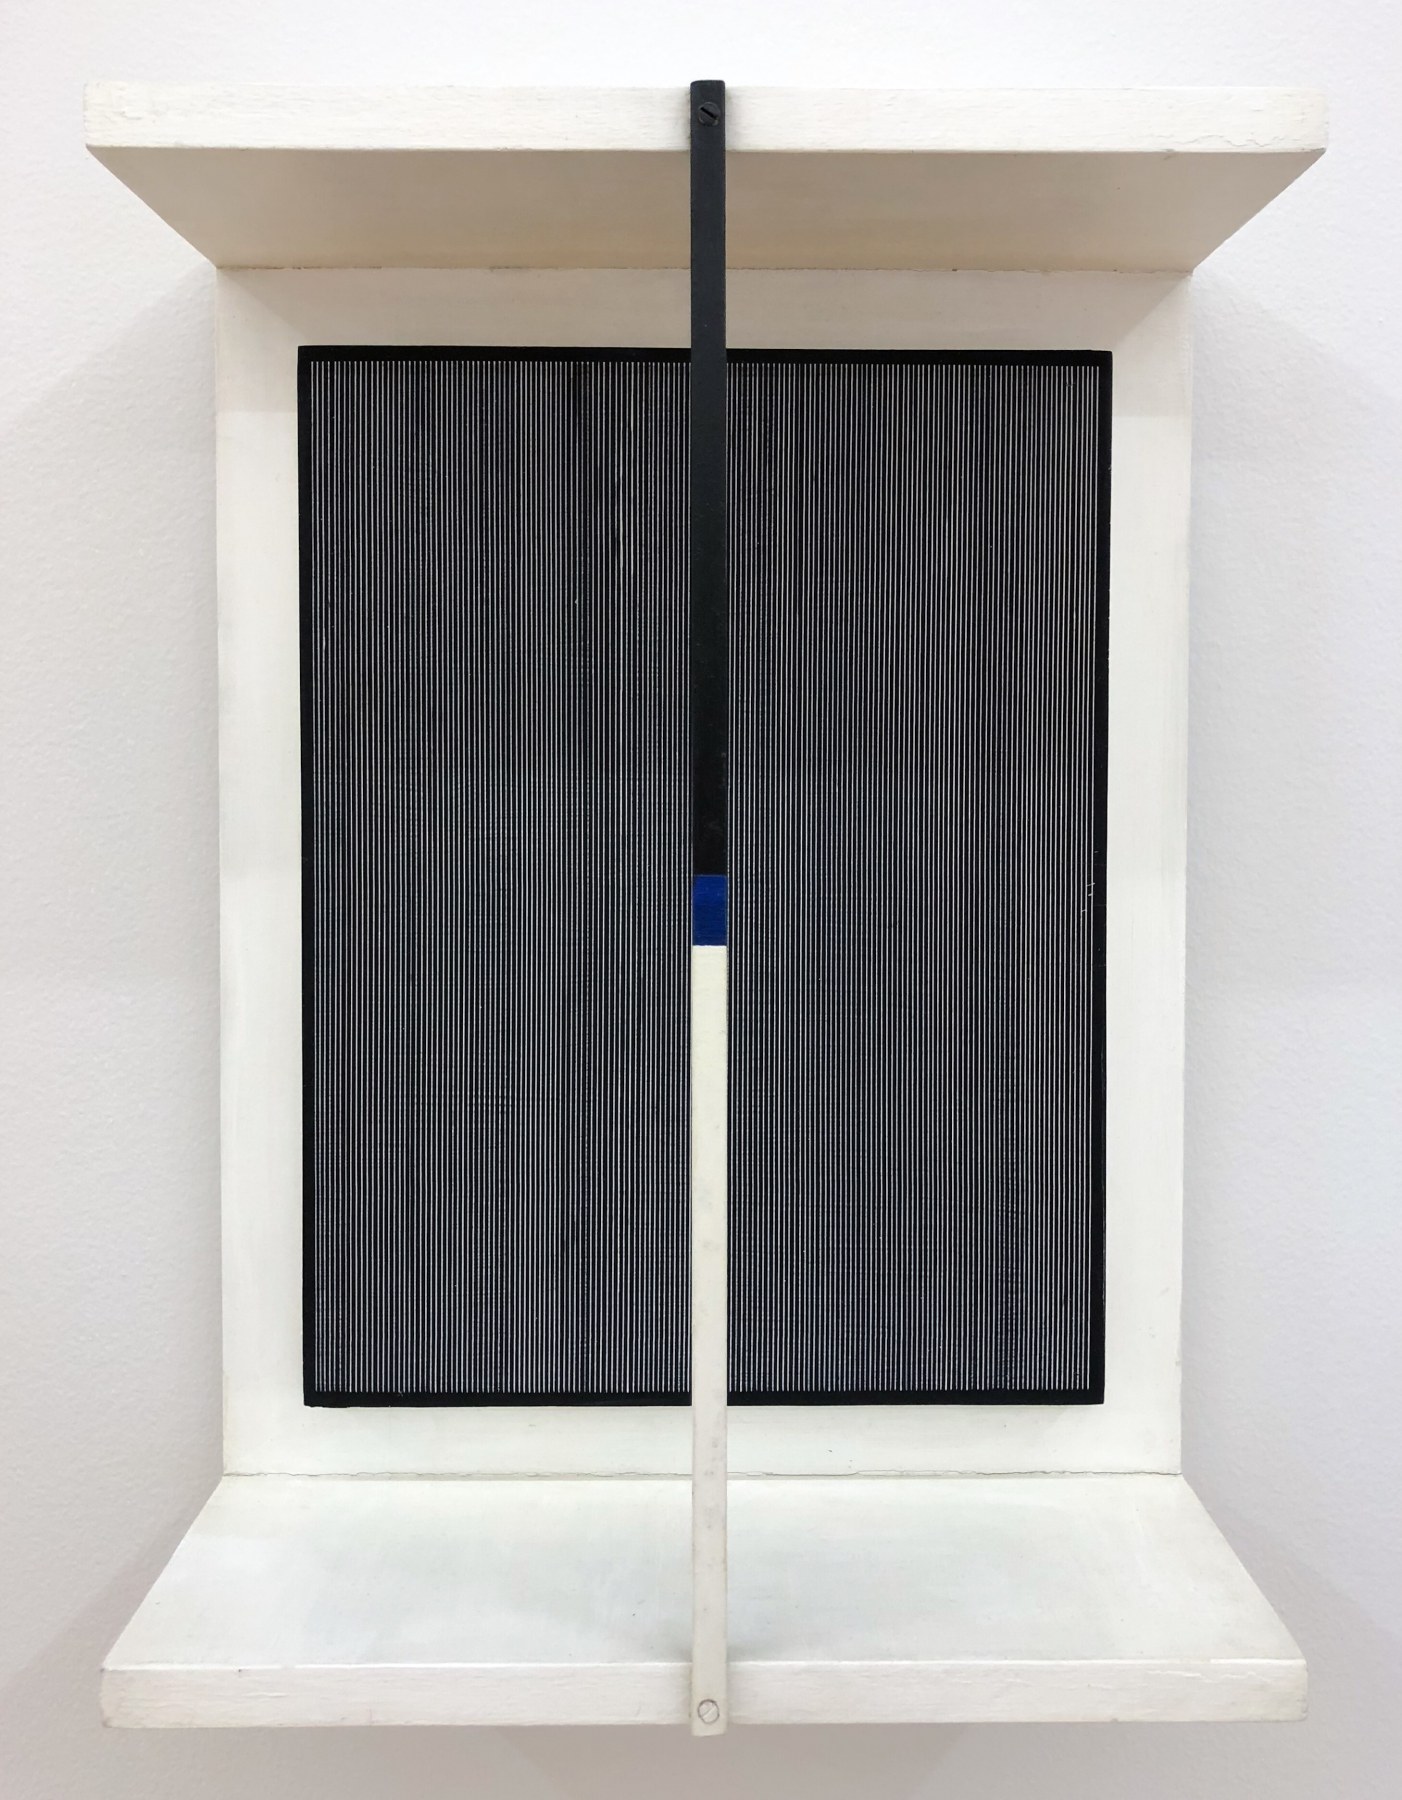 Jes&uacute;s Rafael Soto,&nbsp;Mouvement Tricolore, 1965,&nbsp;Wood, metal and paint,&nbsp;19 5/32 x 14 5/16 x 5 29/32 in. (48.7 x 36.4 x 15 cm.)